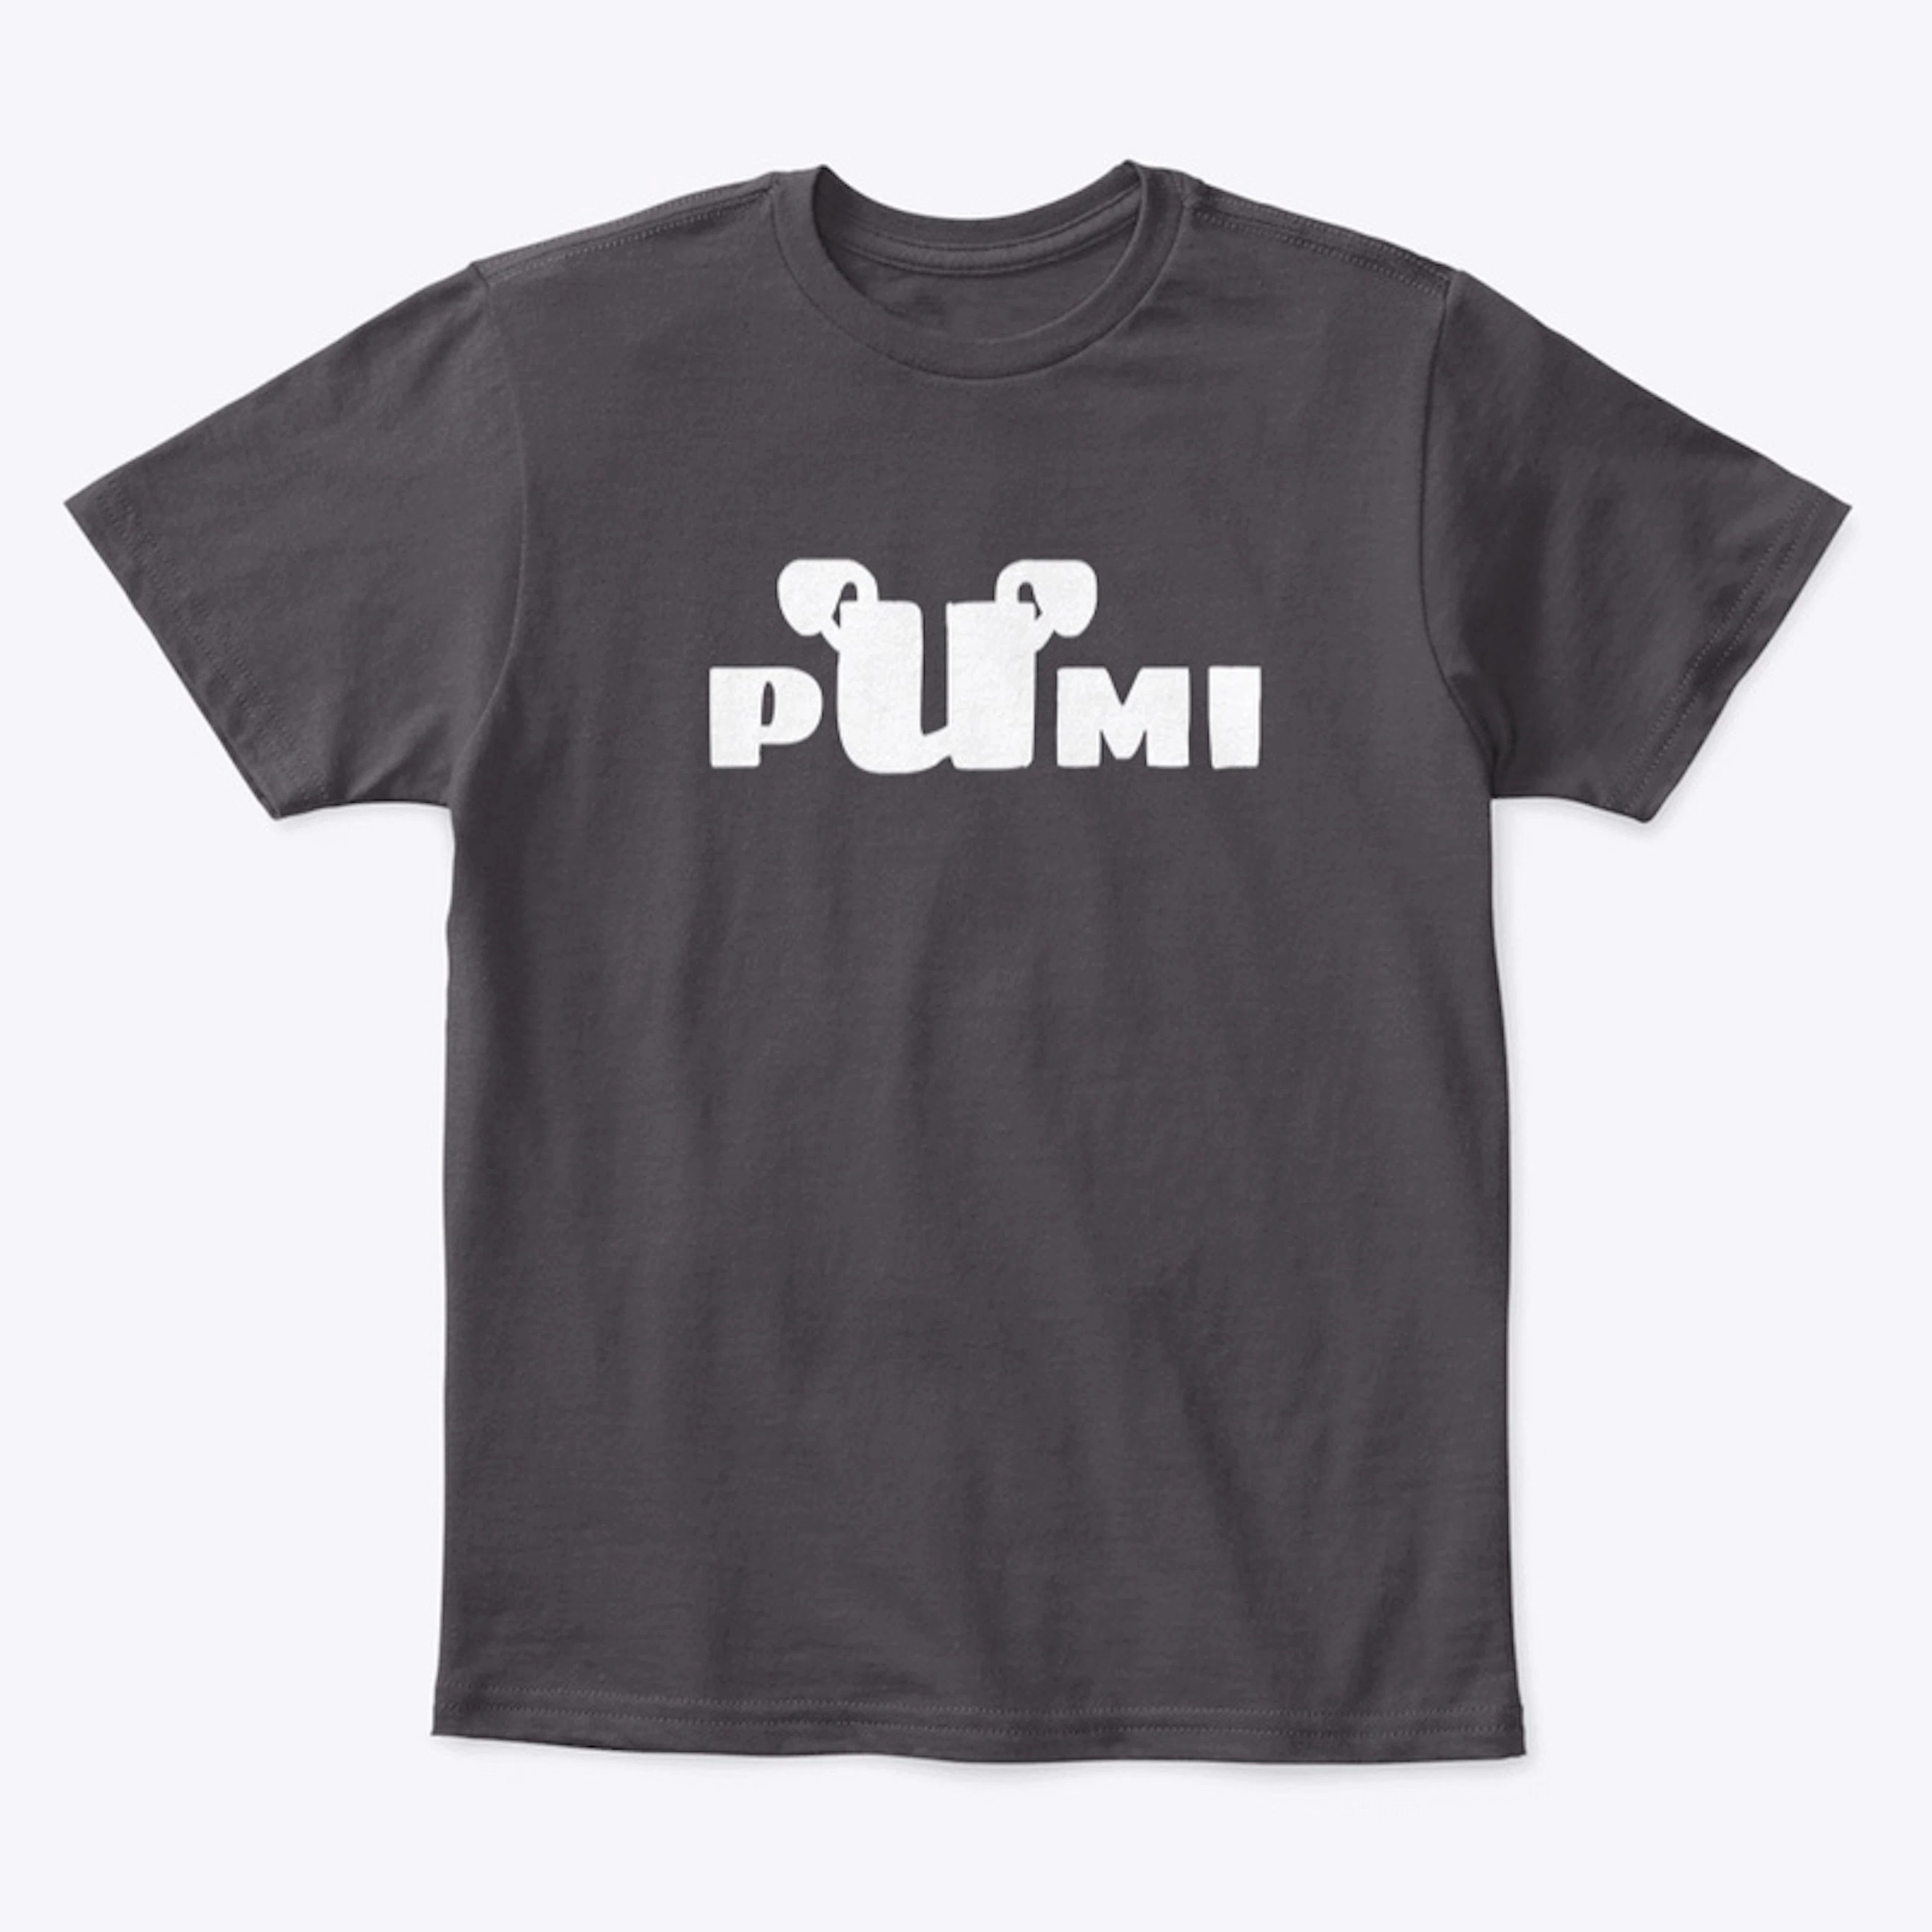 Kids Pumi shirts